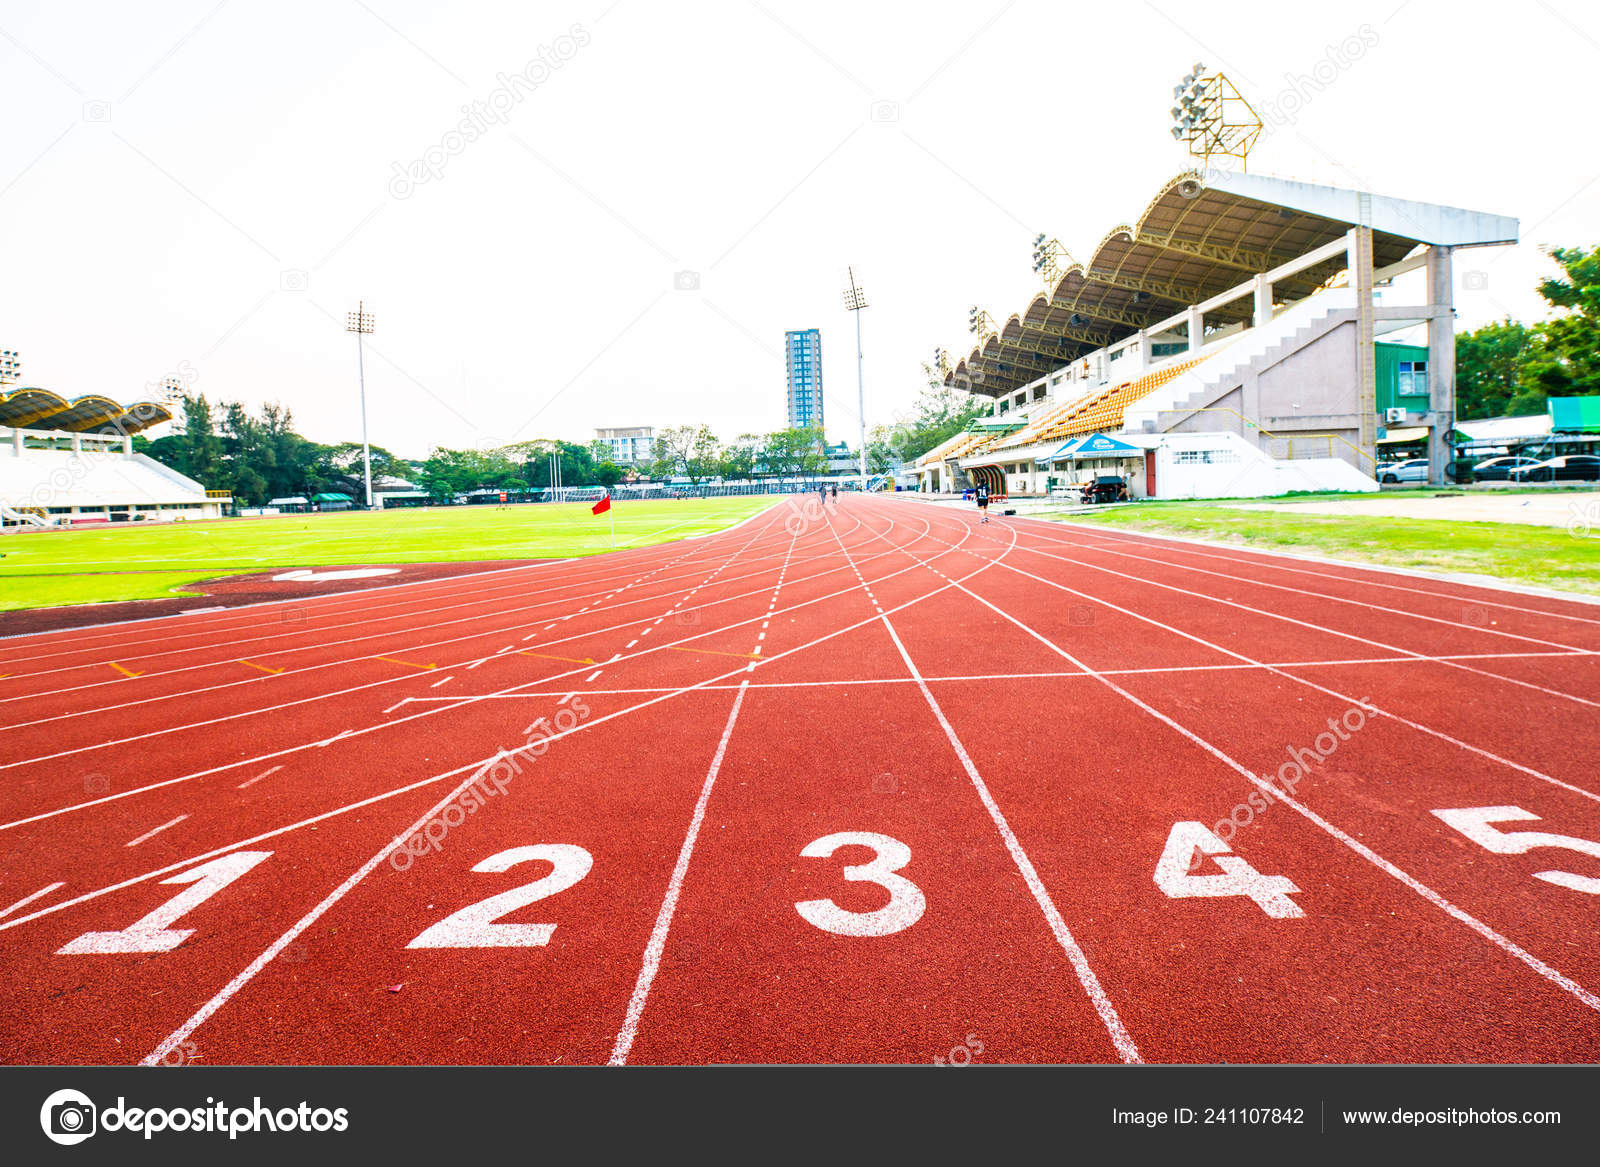 Number Lane Running Track Athletic Stadium Exercise Background ...